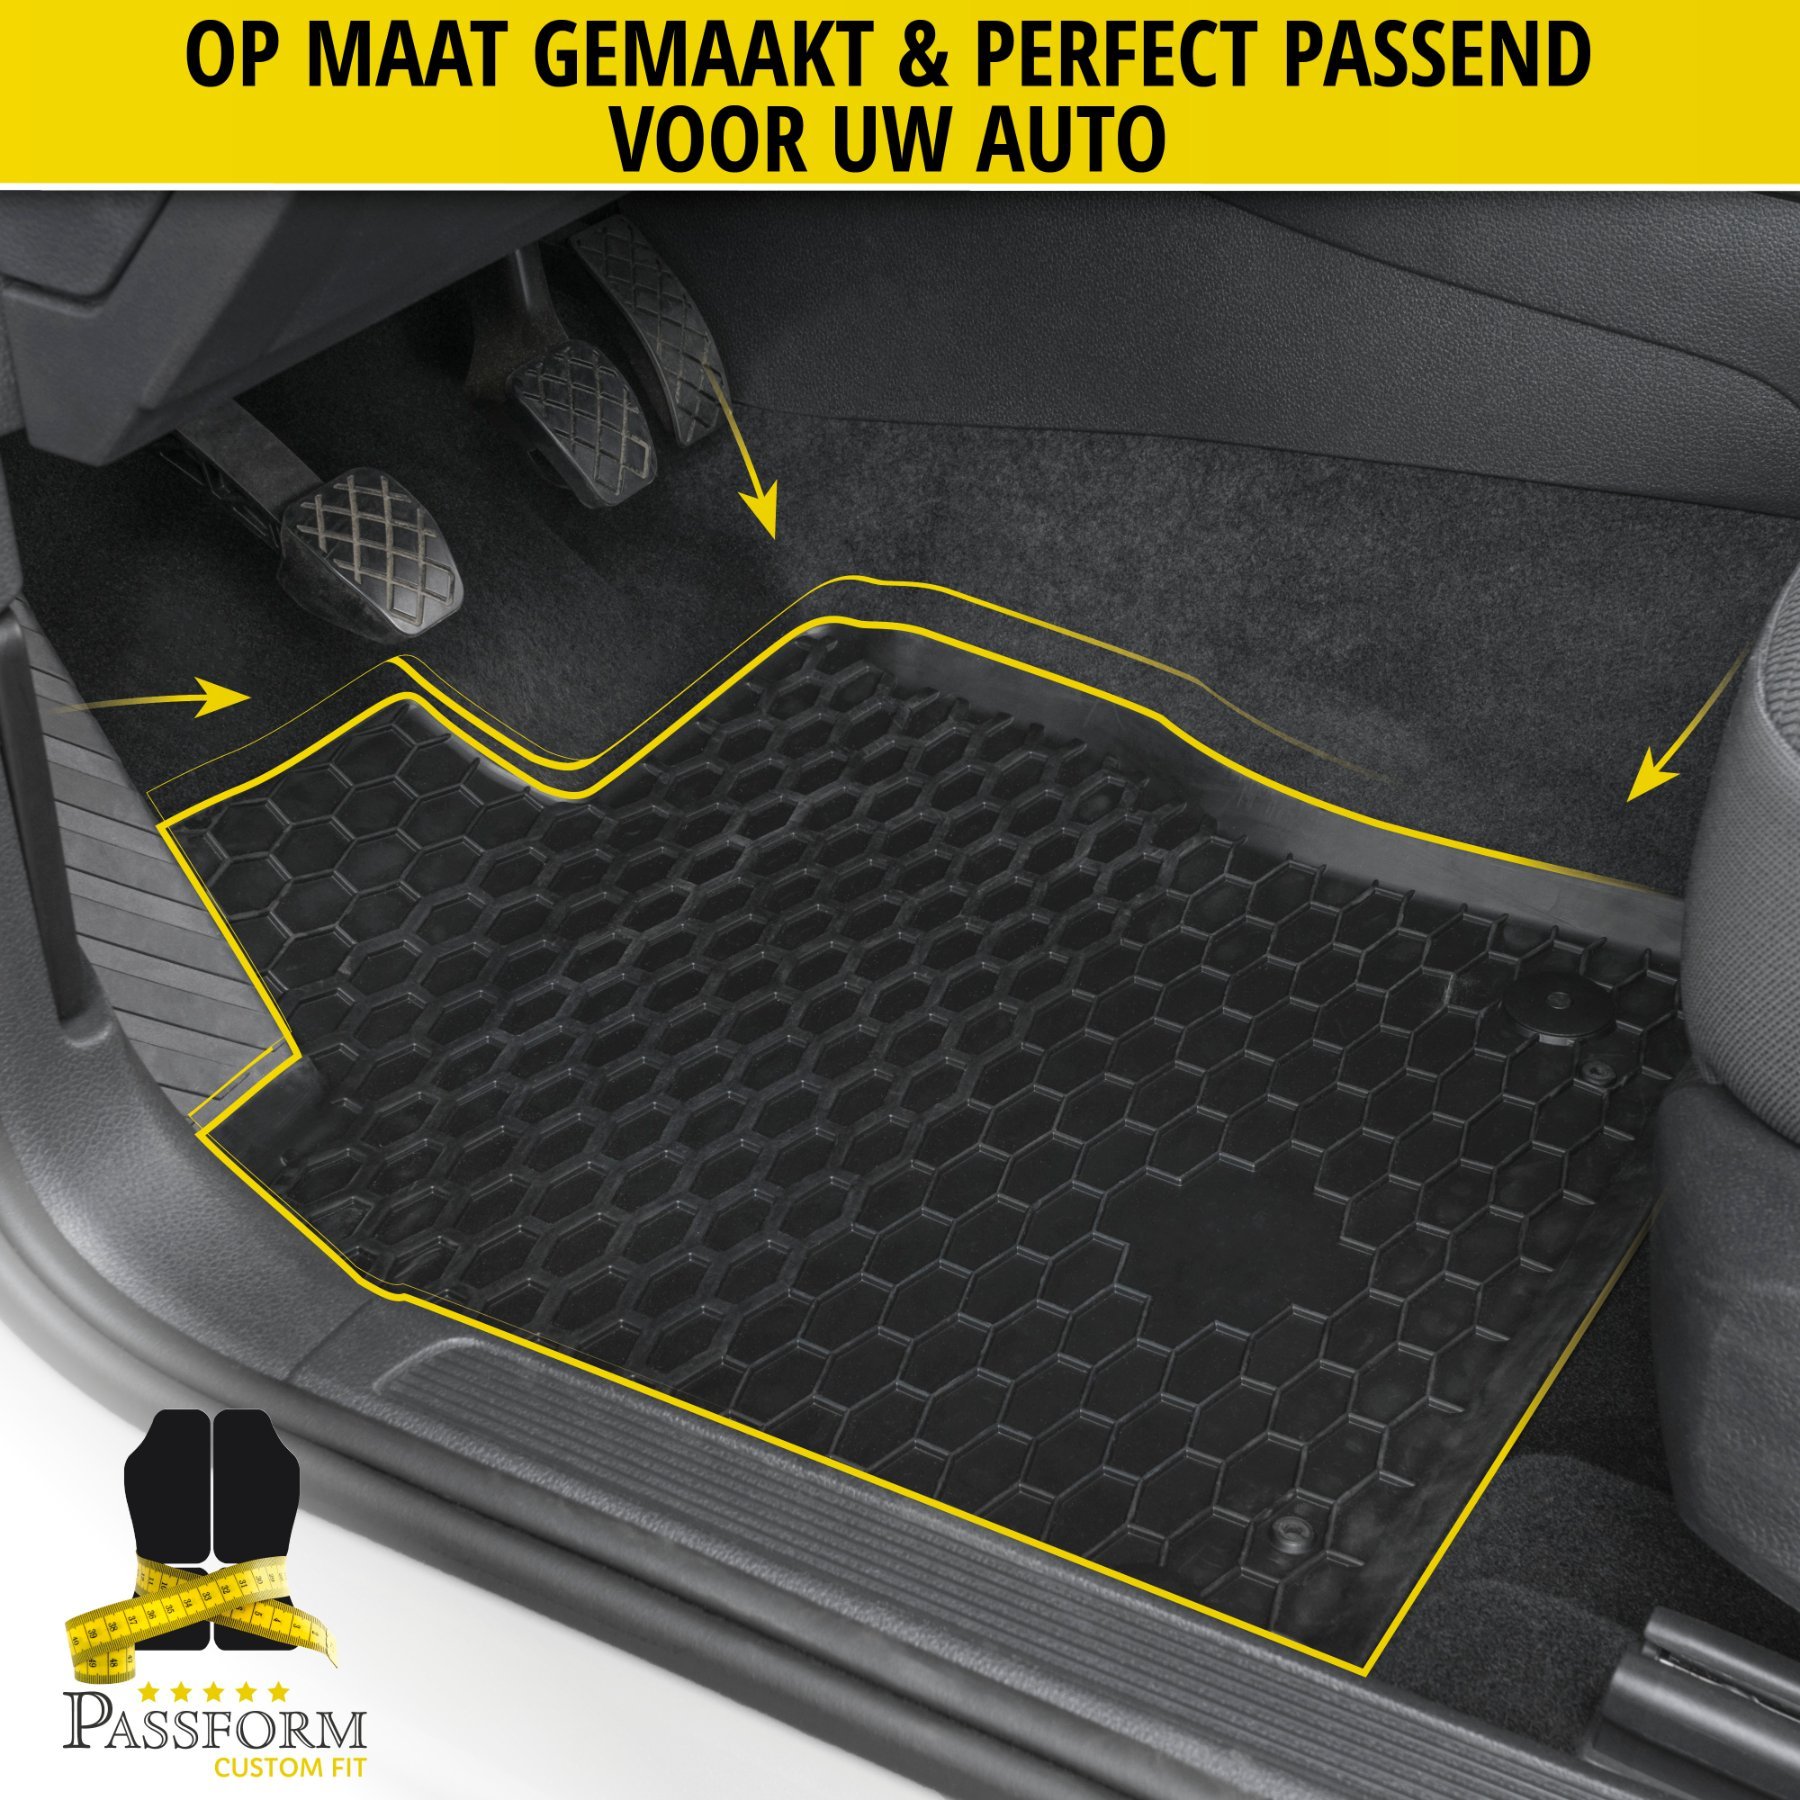 DirtGuard rubberen voetmatten geschikt voor Volvo V40 03/2012-08/2019